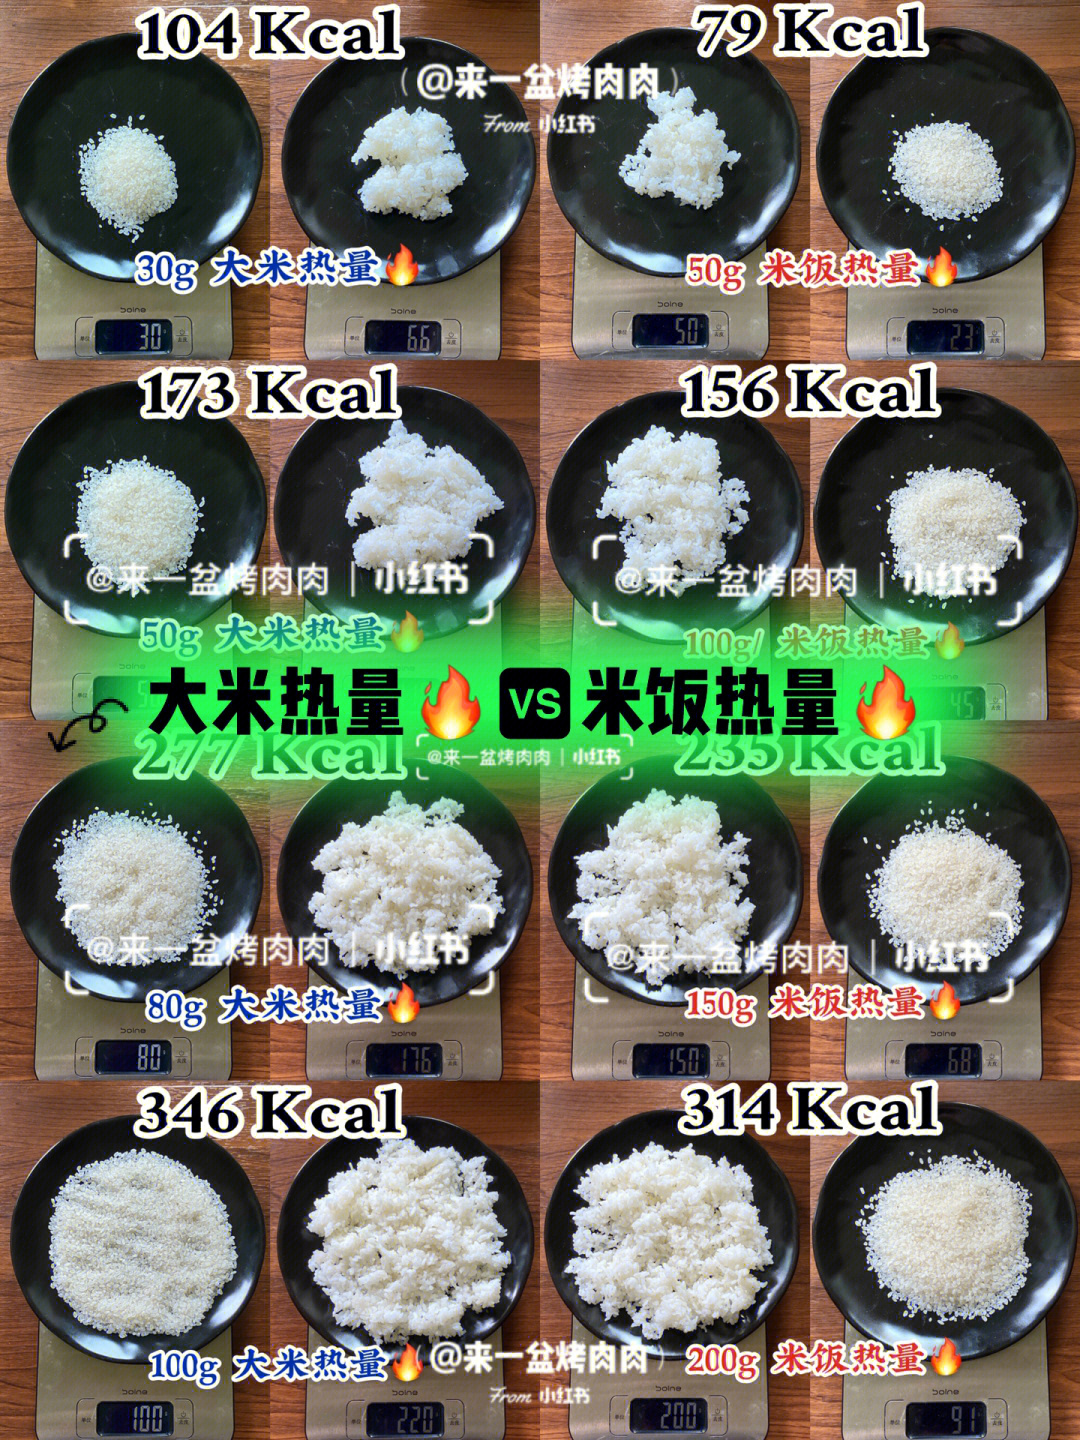 几次饭实验实验了一下08薄荷那个大米热量97和米饭热量97的比例